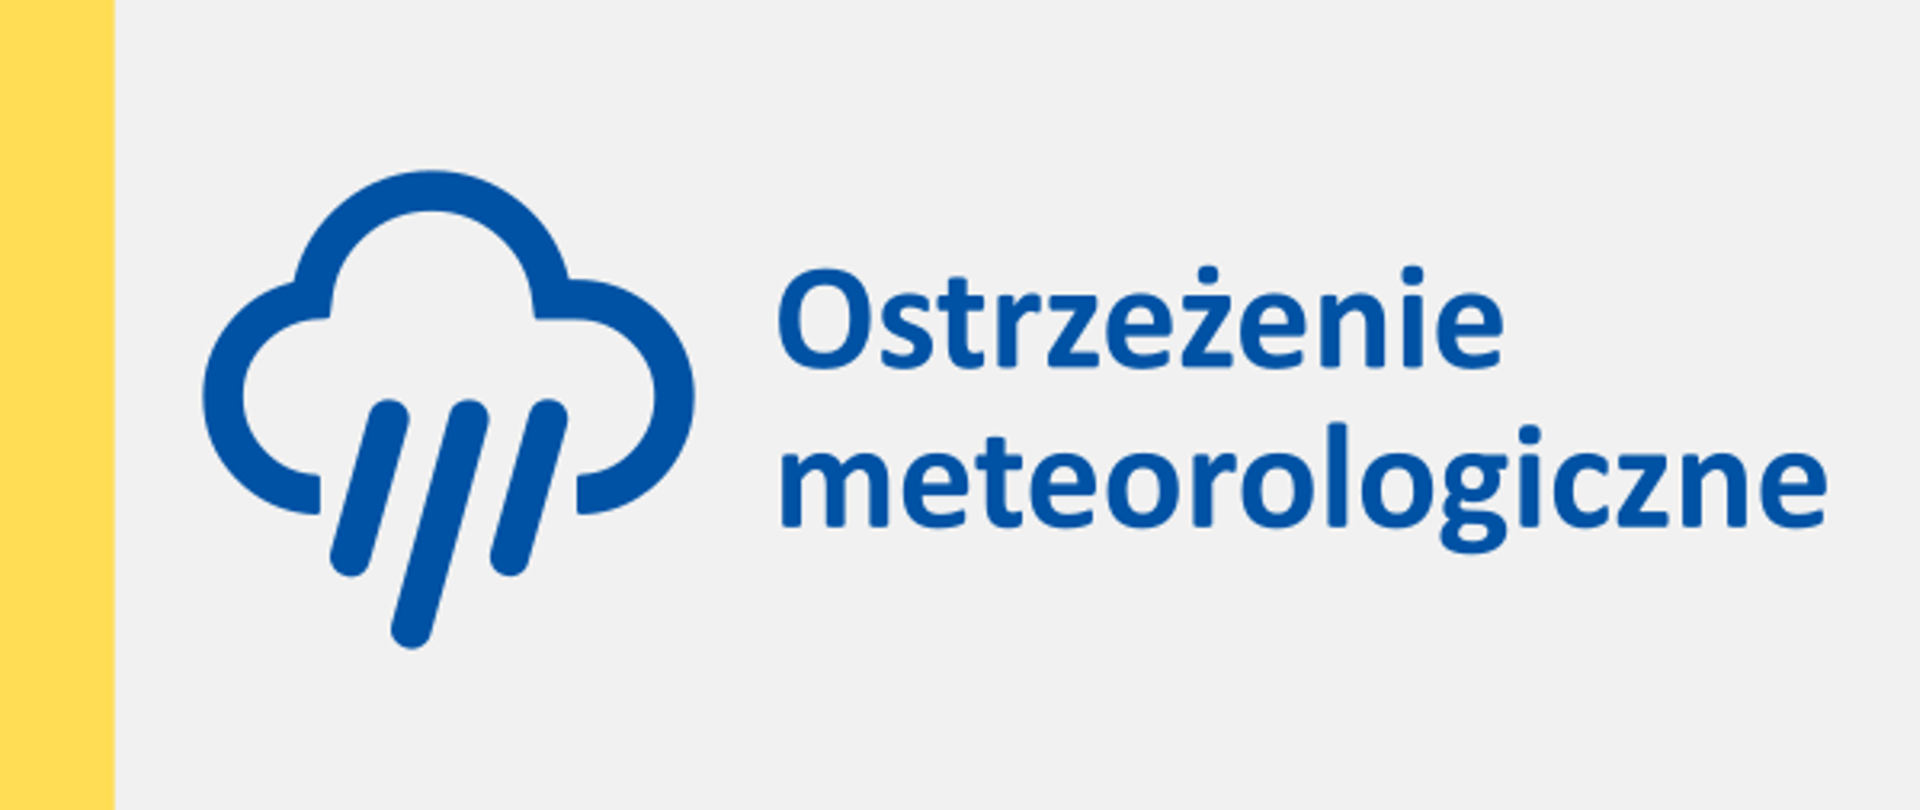 Grafika z symbolem chmury i deszczu oraz napis "Ostrzeżenie meteorologiczne"